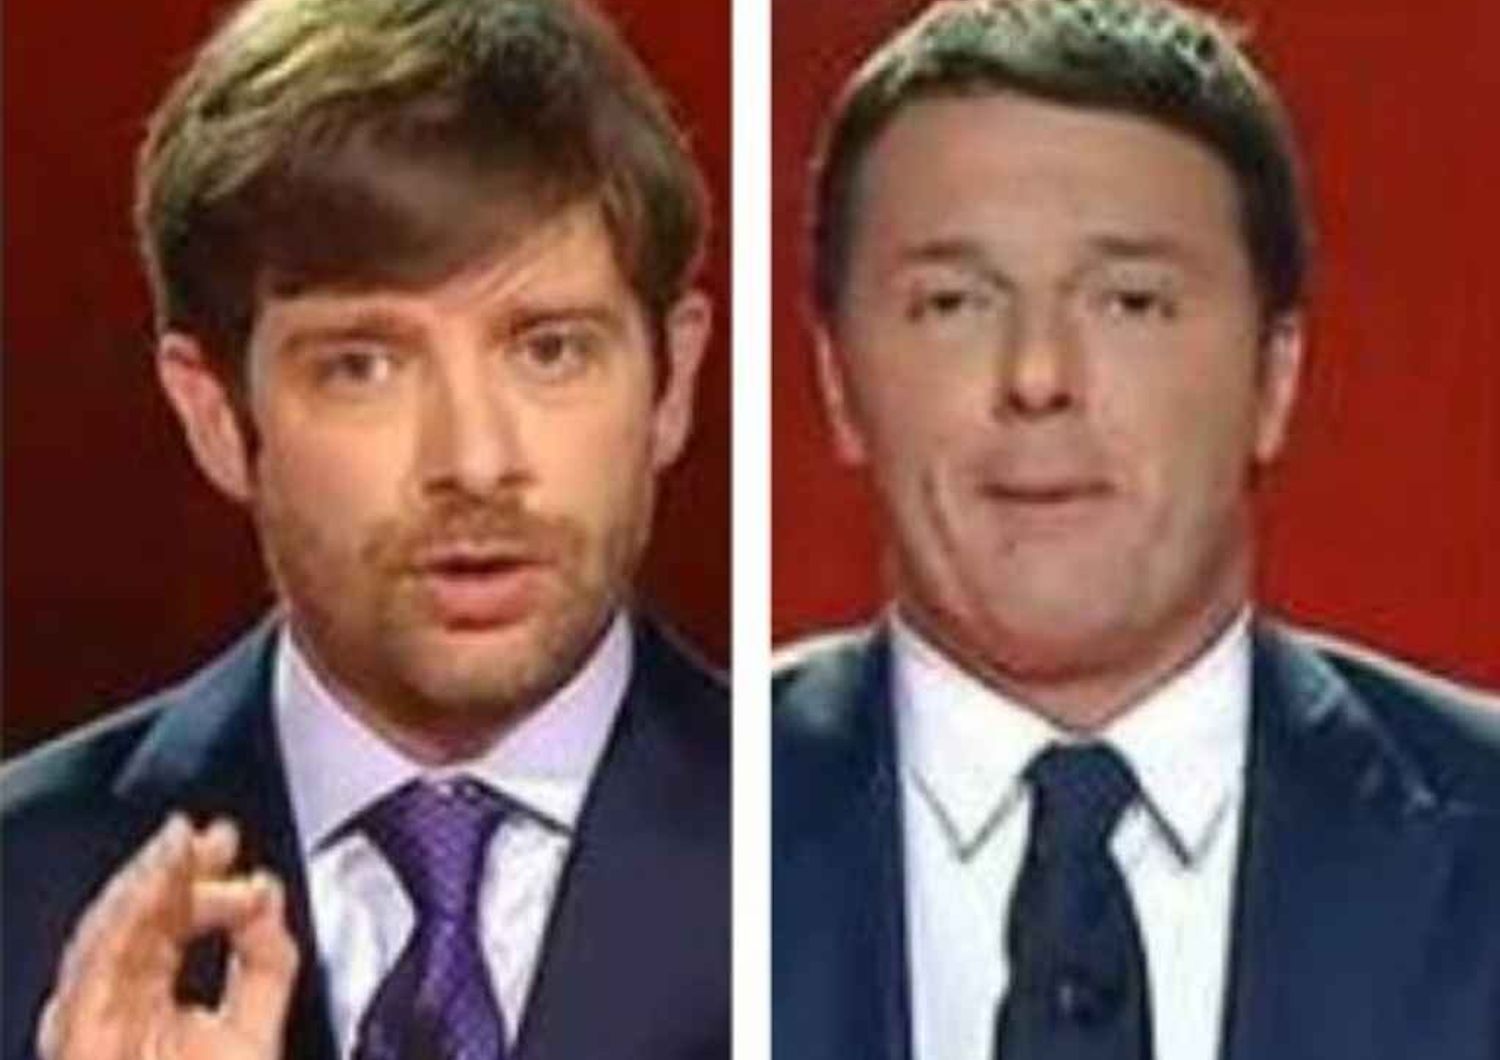 Pd: la minoranza avverte Renzi "Possibile nuovo partito sinistra"